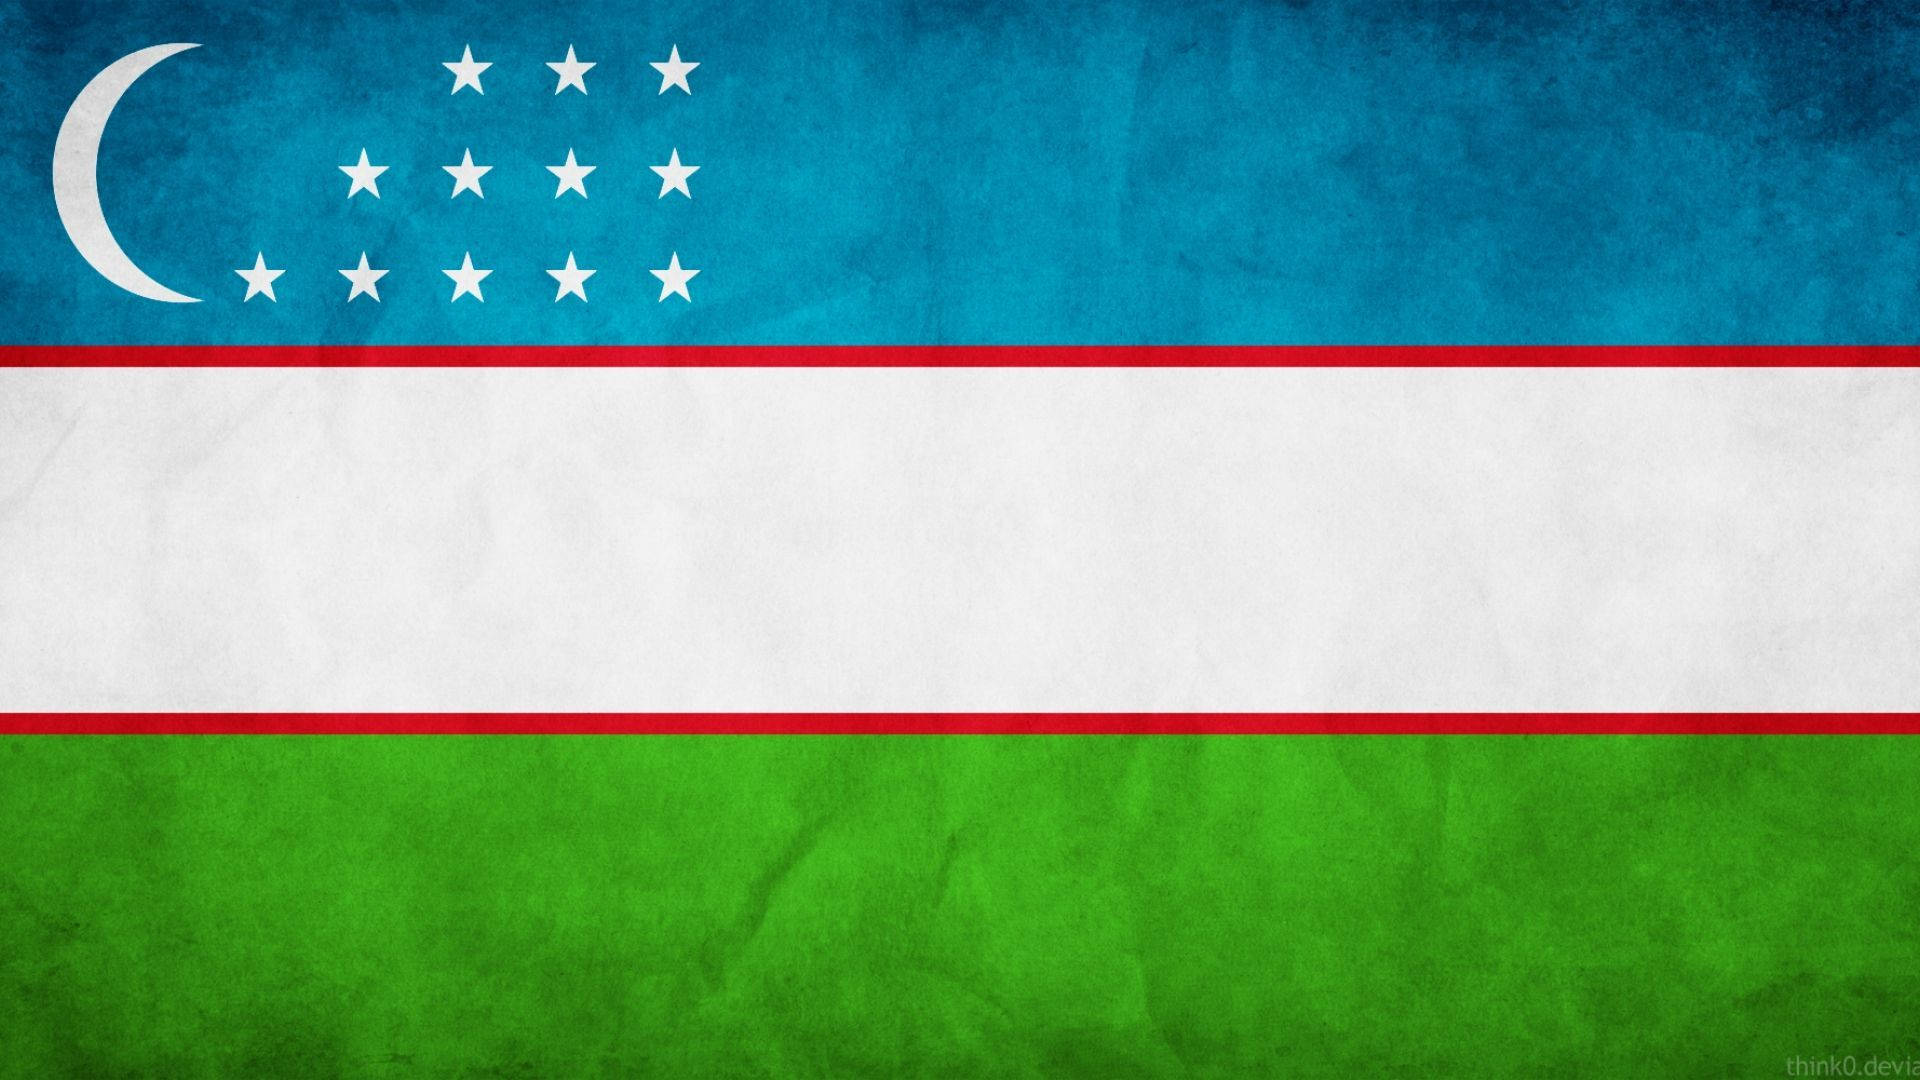 Banderade Uzbekistán Con Media Luna Fondo de pantalla